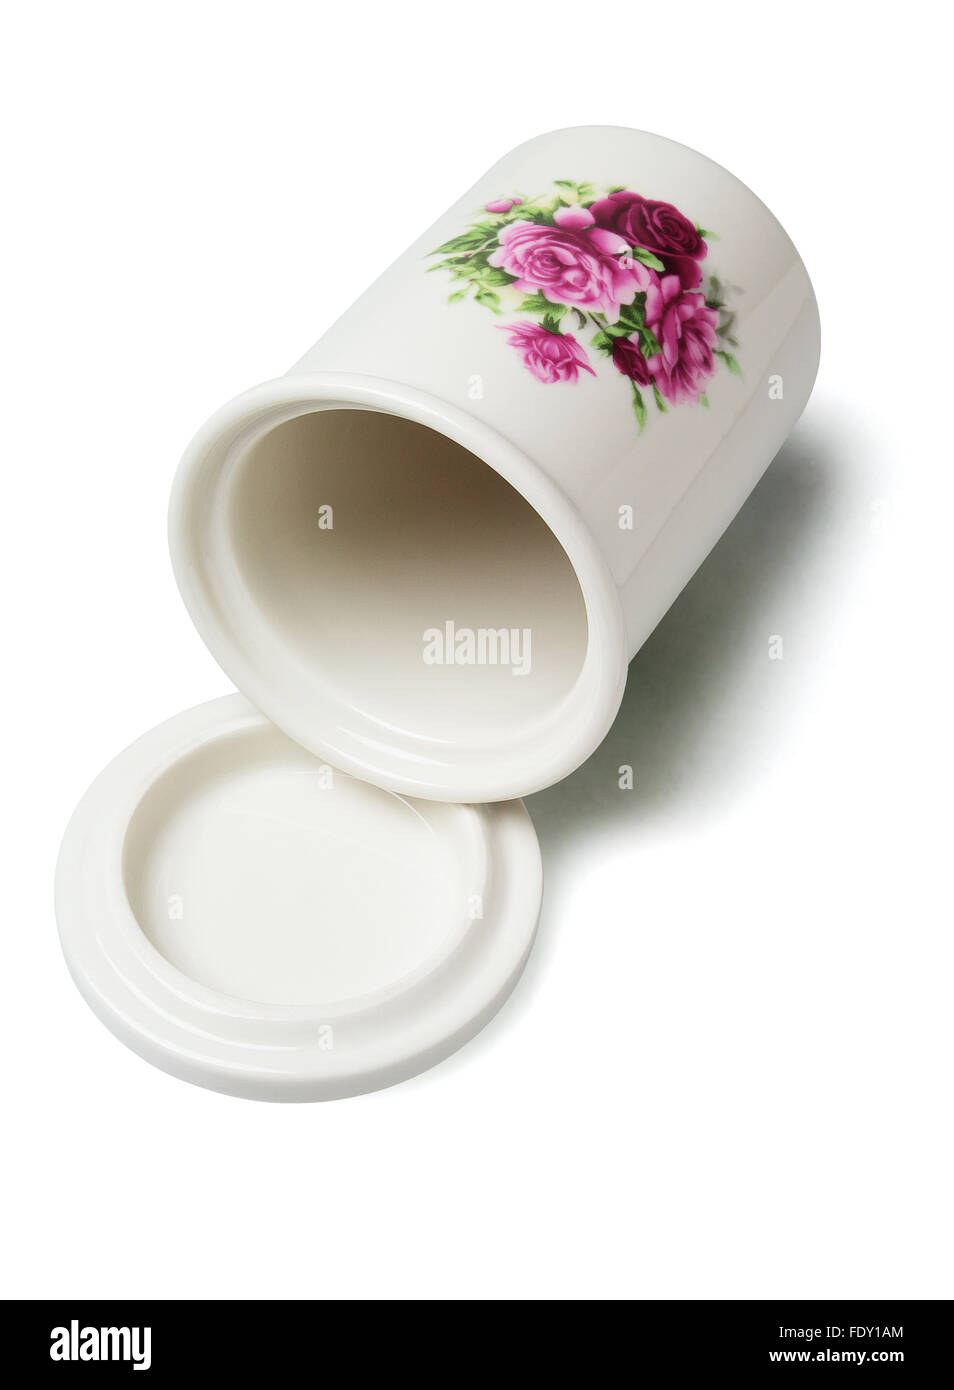 Ceramica floreali contenitore giacente su sfondo bianco Foto Stock